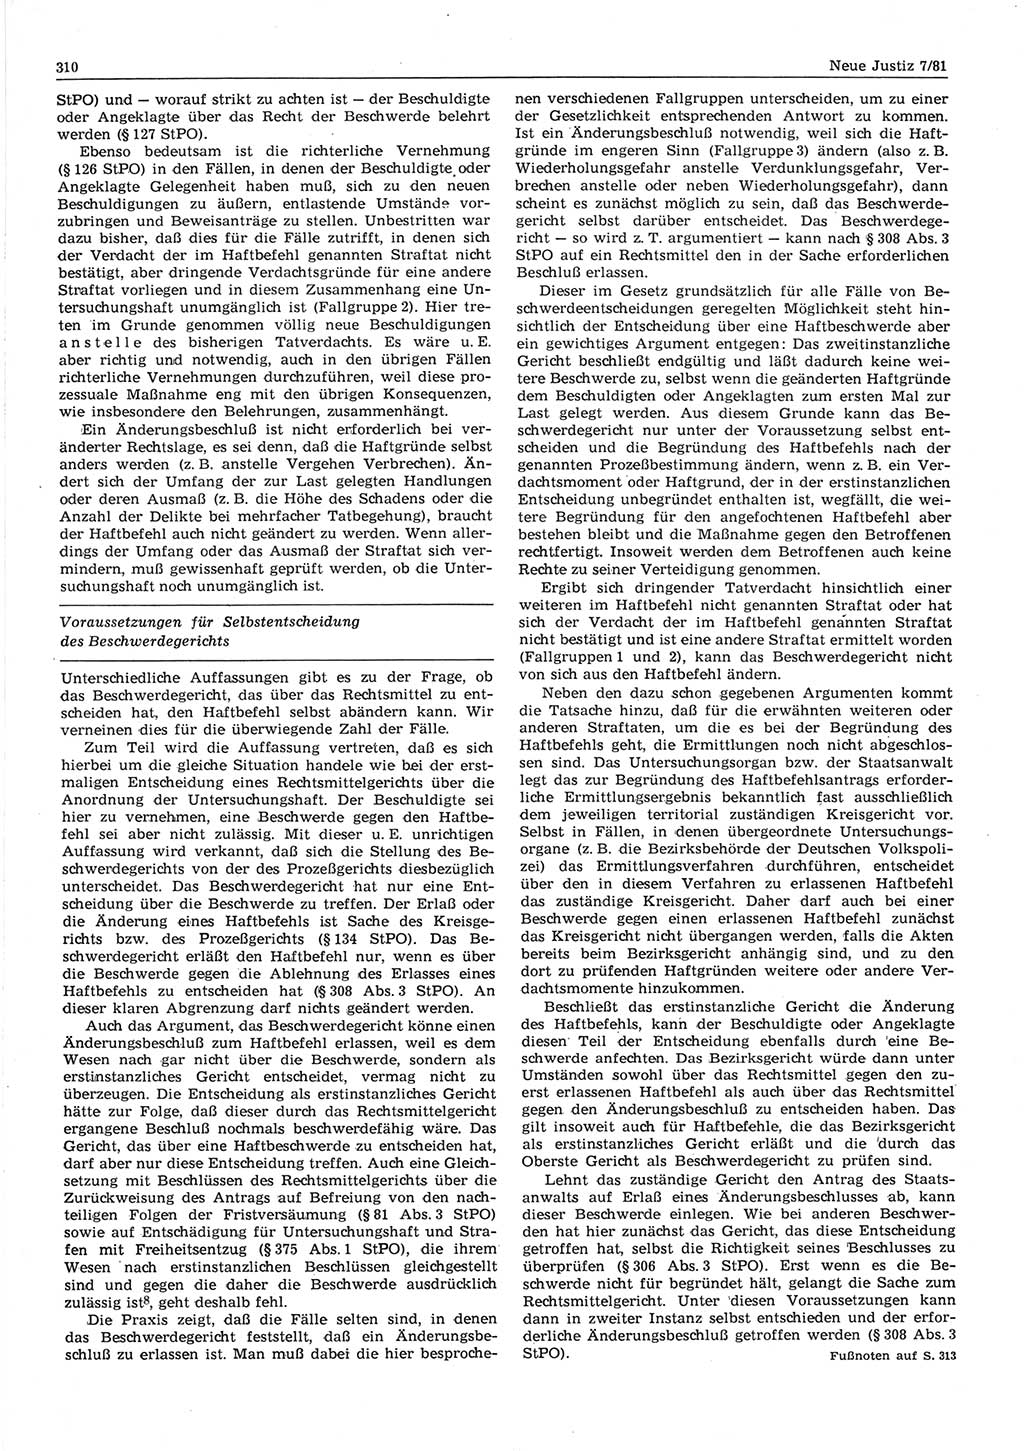 Neue Justiz (NJ), Zeitschrift für sozialistisches Recht und Gesetzlichkeit [Deutsche Demokratische Republik (DDR)], 35. Jahrgang 1981, Seite 310 (NJ DDR 1981, S. 310)